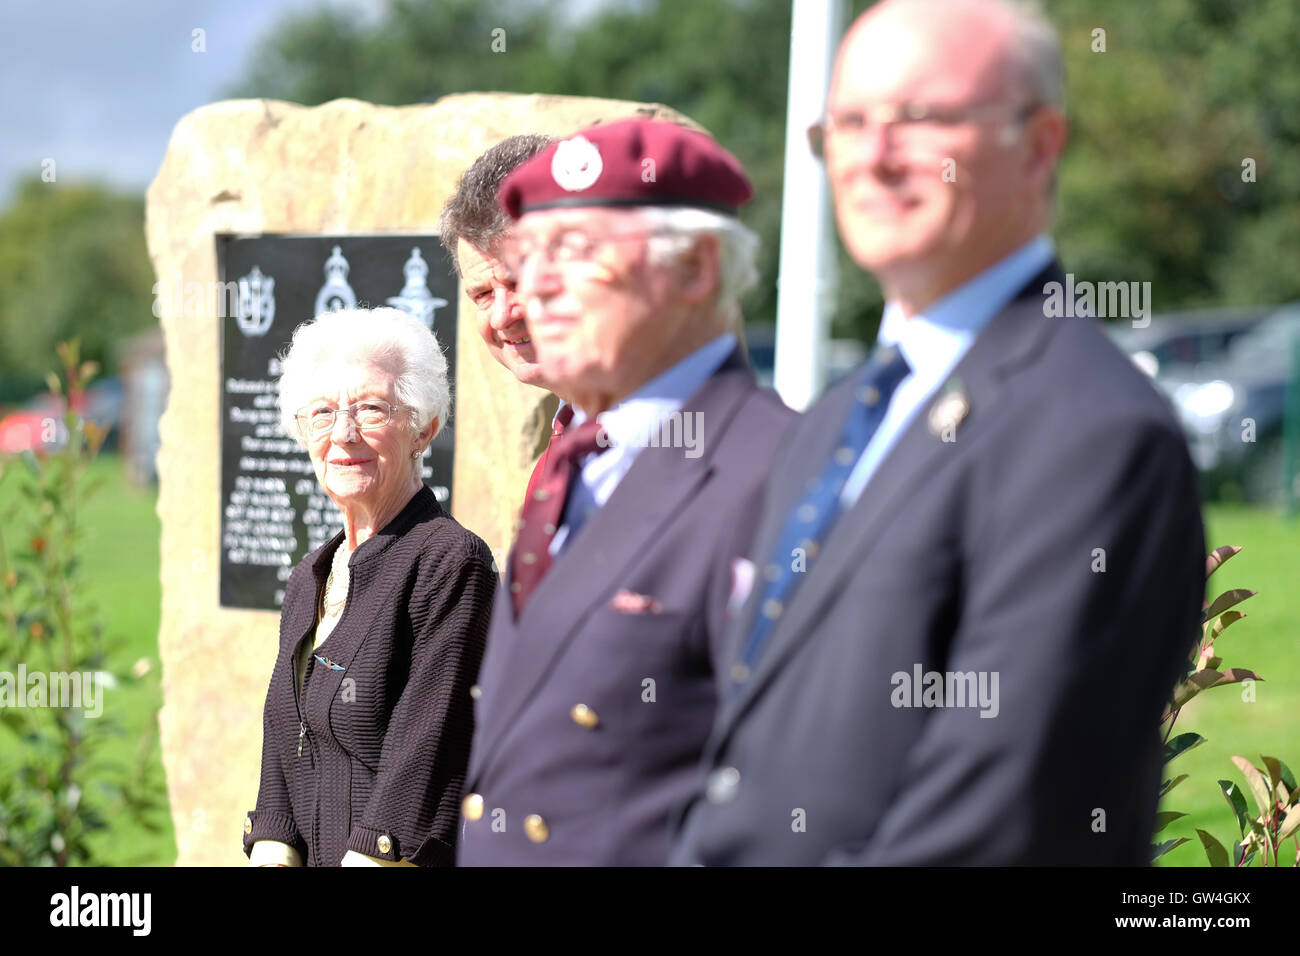 Shobdon airfield, Herefordshire, UK. 11 Settembre, 2016. Onorevole Joan Walpole un ex WAAF basato a RAF Shobdon ora di età compresa tra 95 anni si prepara a svelare il nuovo memoriale di guerra in ex RAF Shobdon airfield. Il memorial onora gli uomini e le donne del n. 5 di Aliante Scuola di Formazione, formata a RAF Shobdon nel 1942. I piloti qualificati è andato a servire nel pilota di parapendio reggimento e prendere parte alle operazioni in Norvegia, Sicilia, D-Day di Arnhem e la traversata del fiume Reno in Germania. Foto Stock